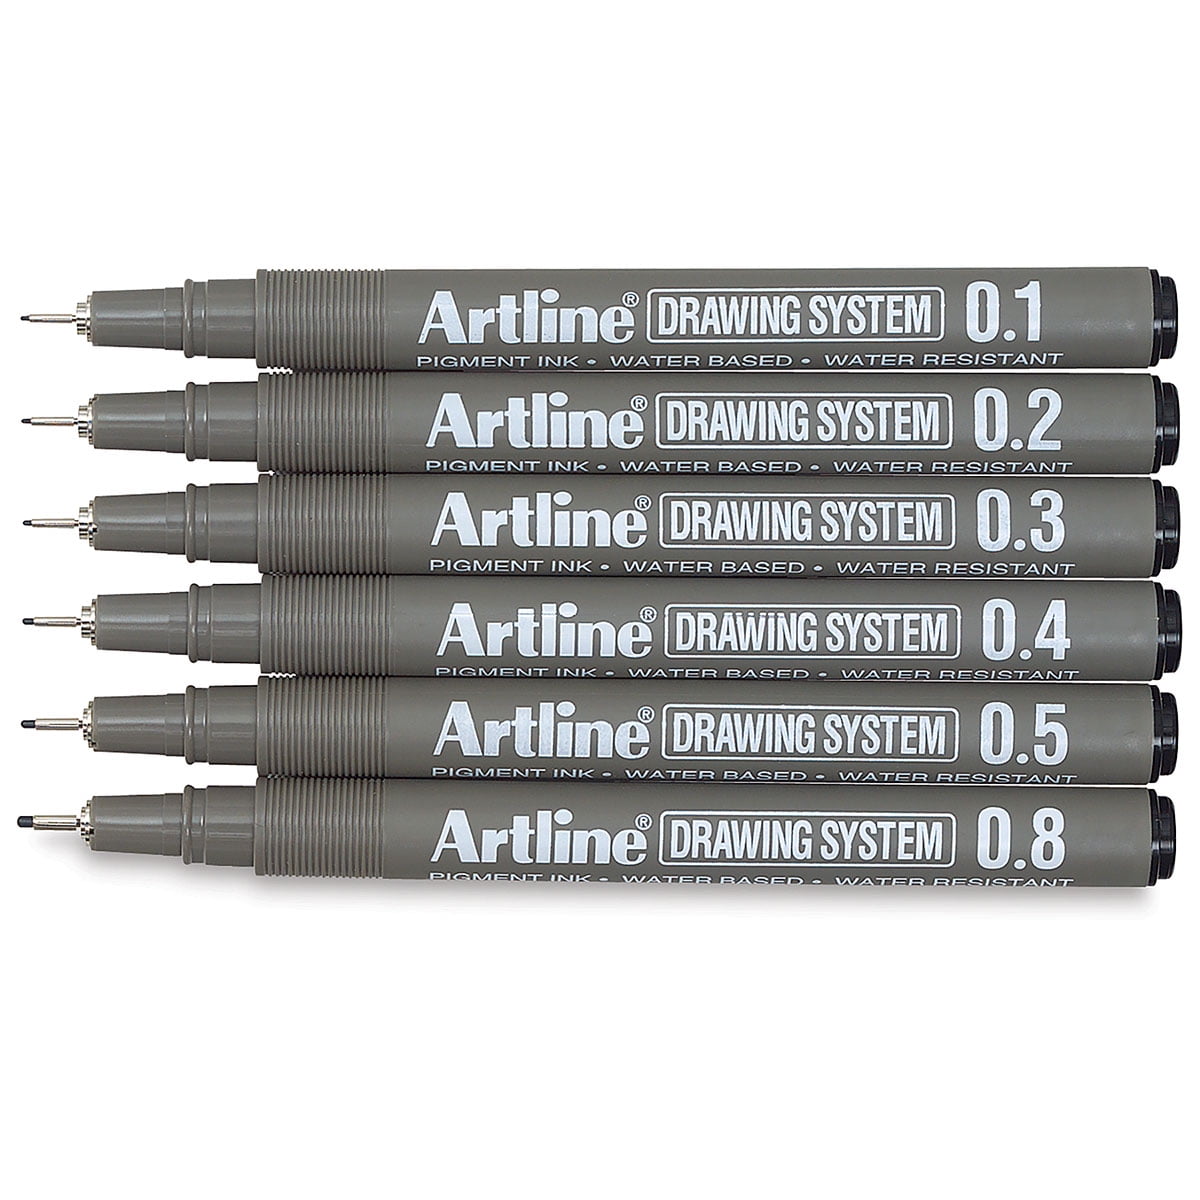 Pentel Arts Hybrid Technica 0.3 mm Pen, Ultra Fine Point, Black Ink, Box of 12 (KN103-A)